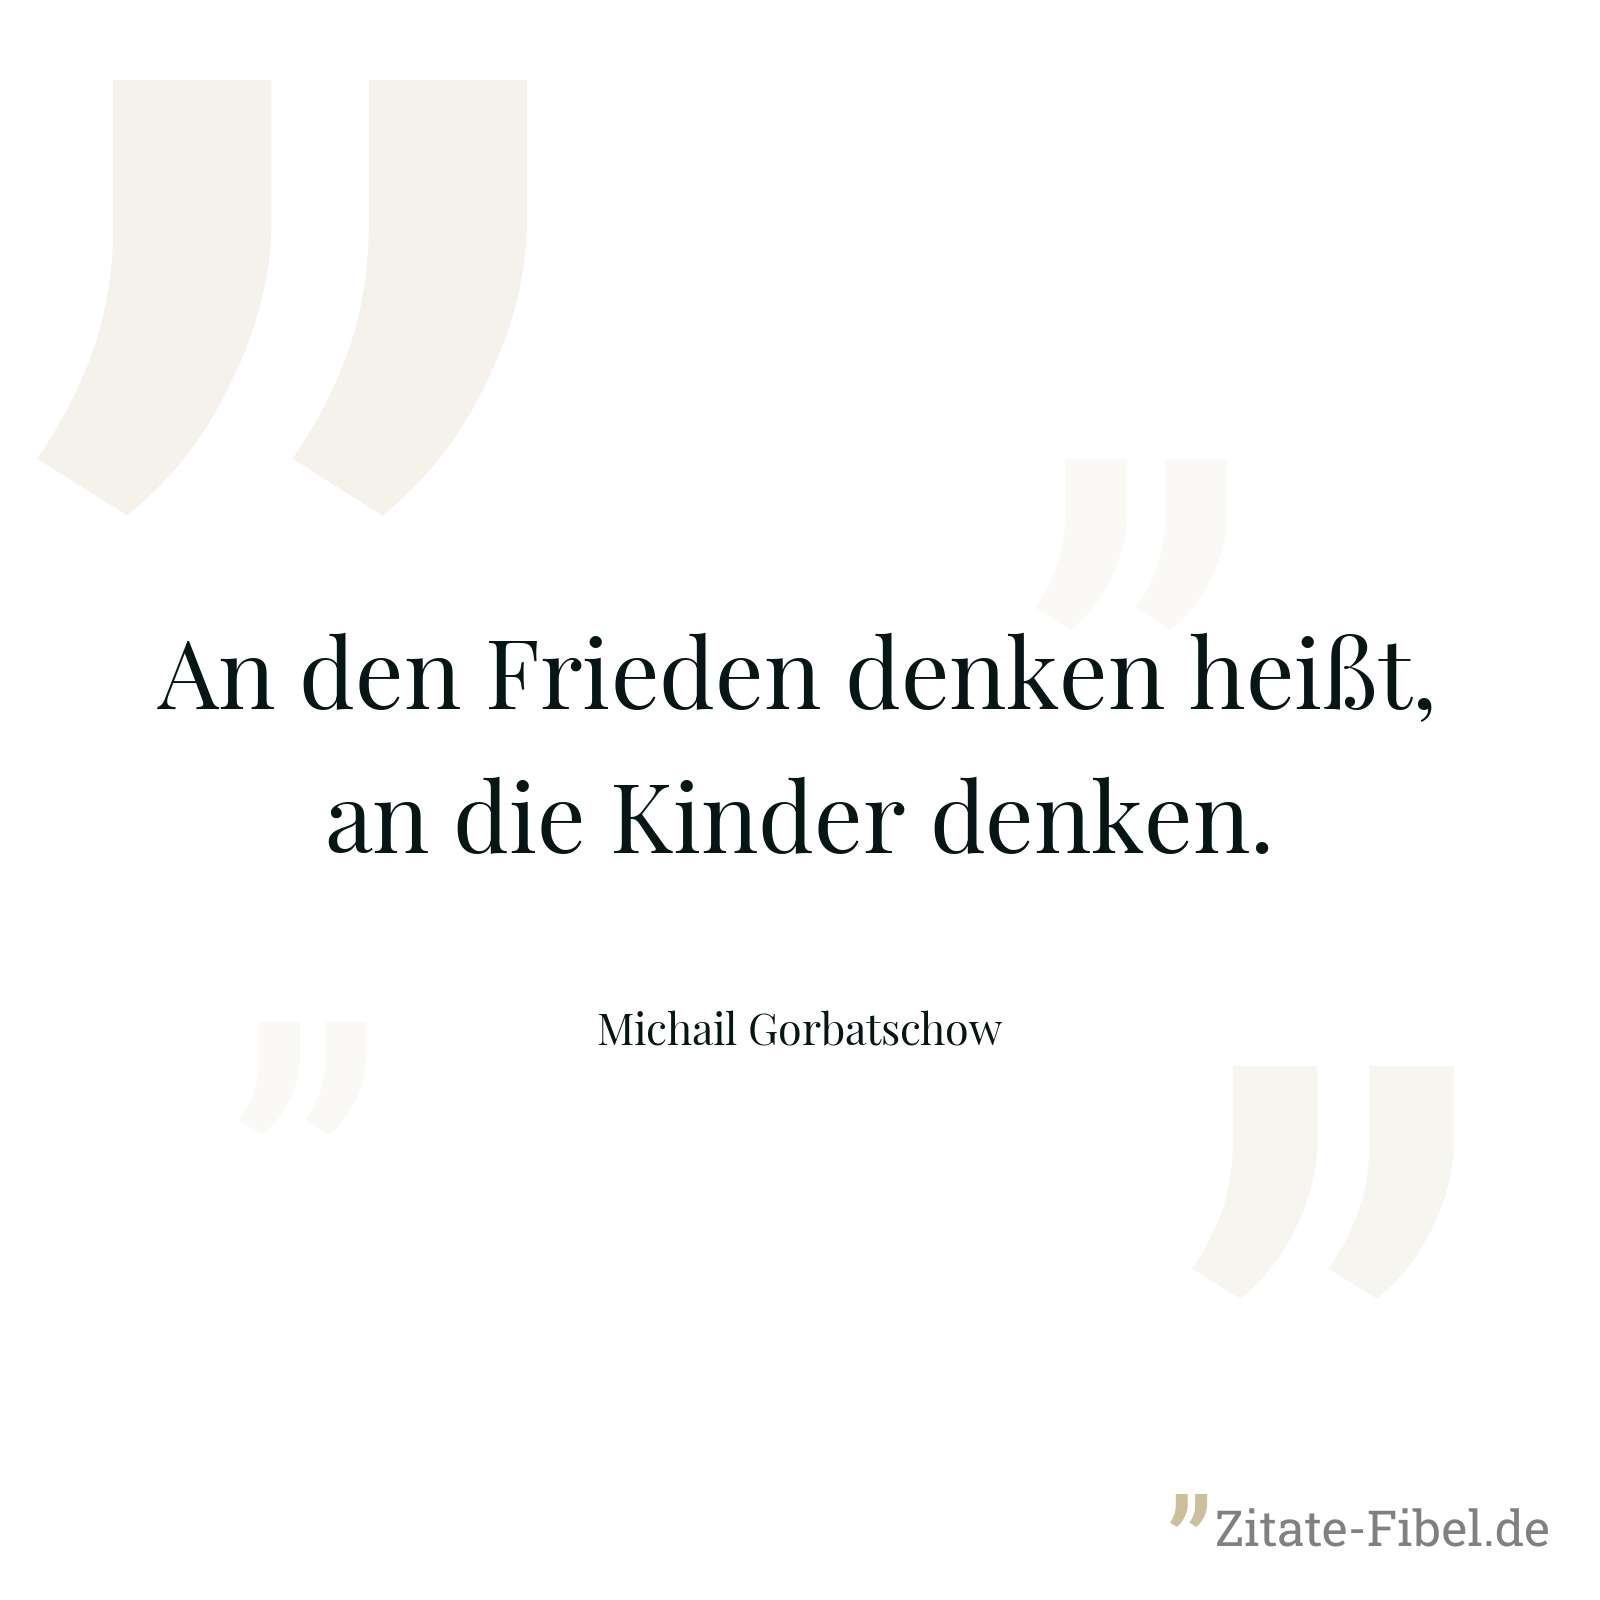 An den Frieden denken heißt, an die Kinder denken. - Michail Gorbatschow